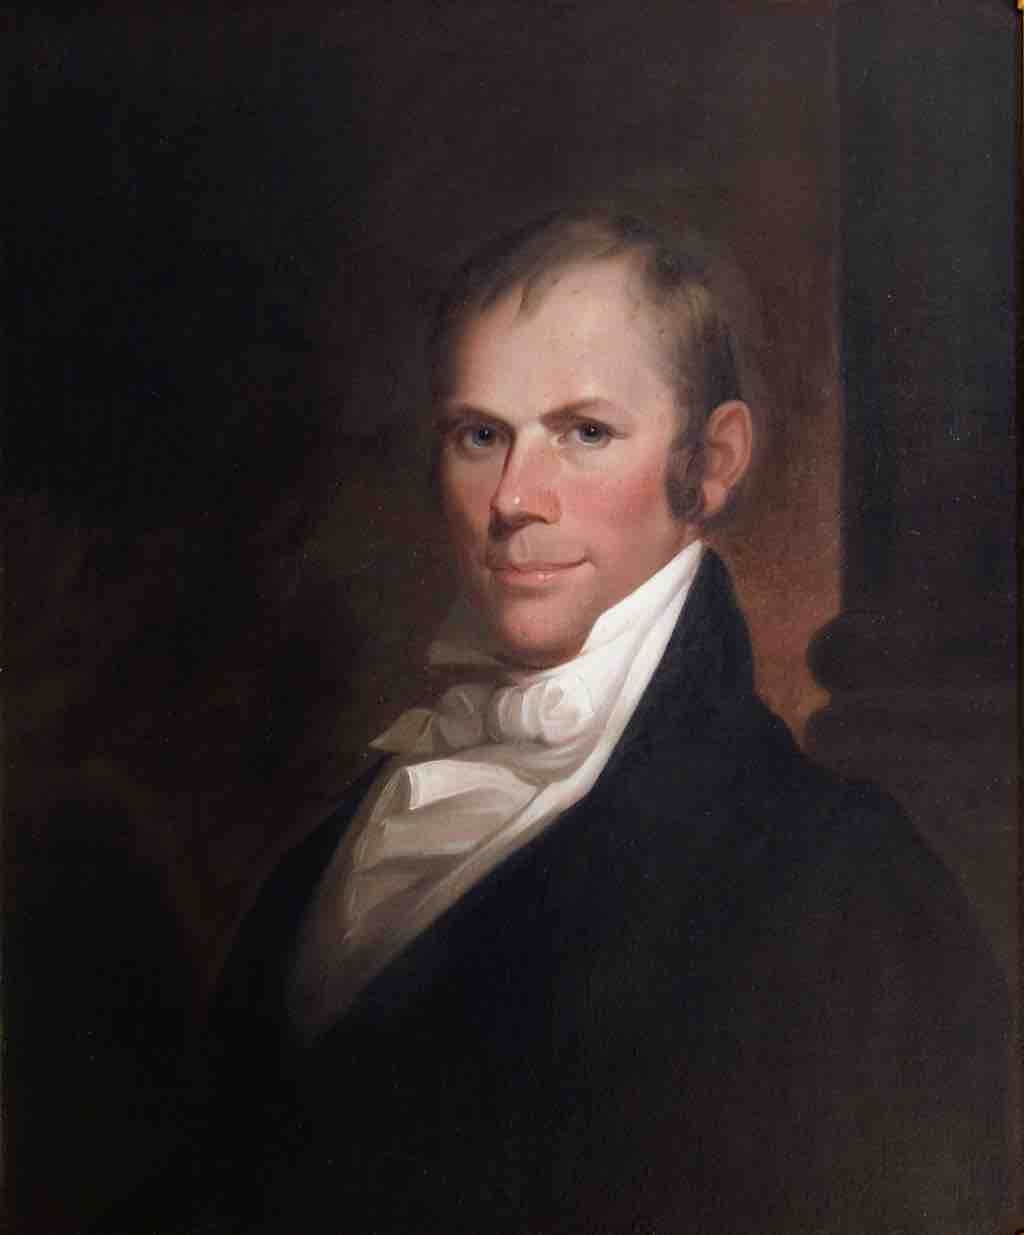 Portrait of Henry Clay by Matthew Harris Jouett, 1818